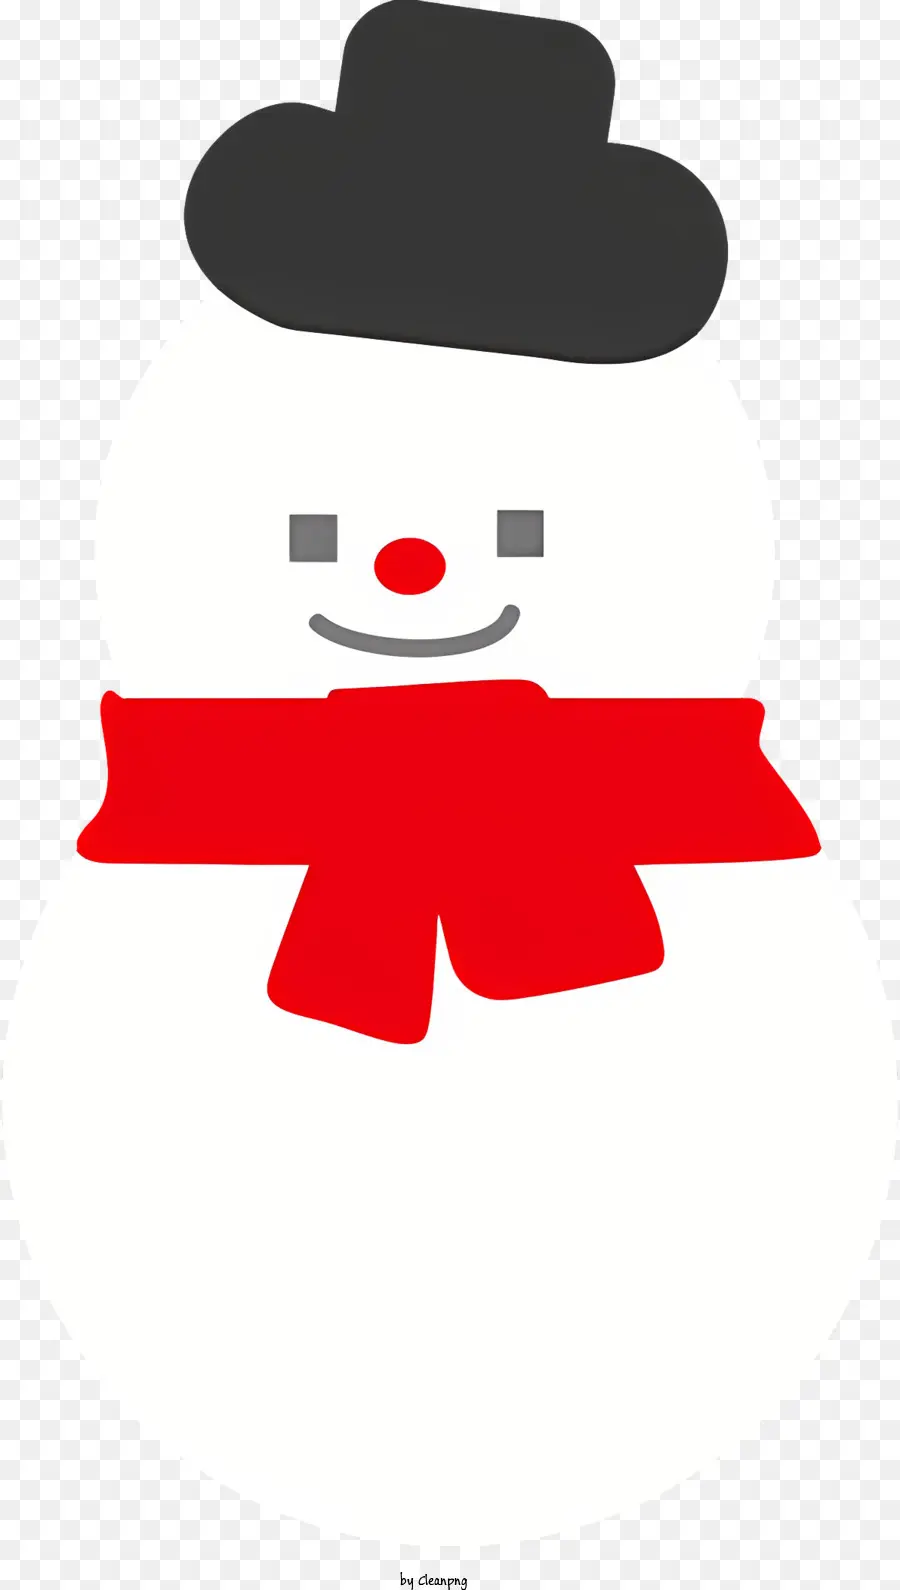 Cartoon Snowman Schwarz und Weiß gestreifter Schal schwarzer Top Hut weiße Band Schwarzes Rand - Lächelnder Schneemann mit gestreiftem Schal und Hut